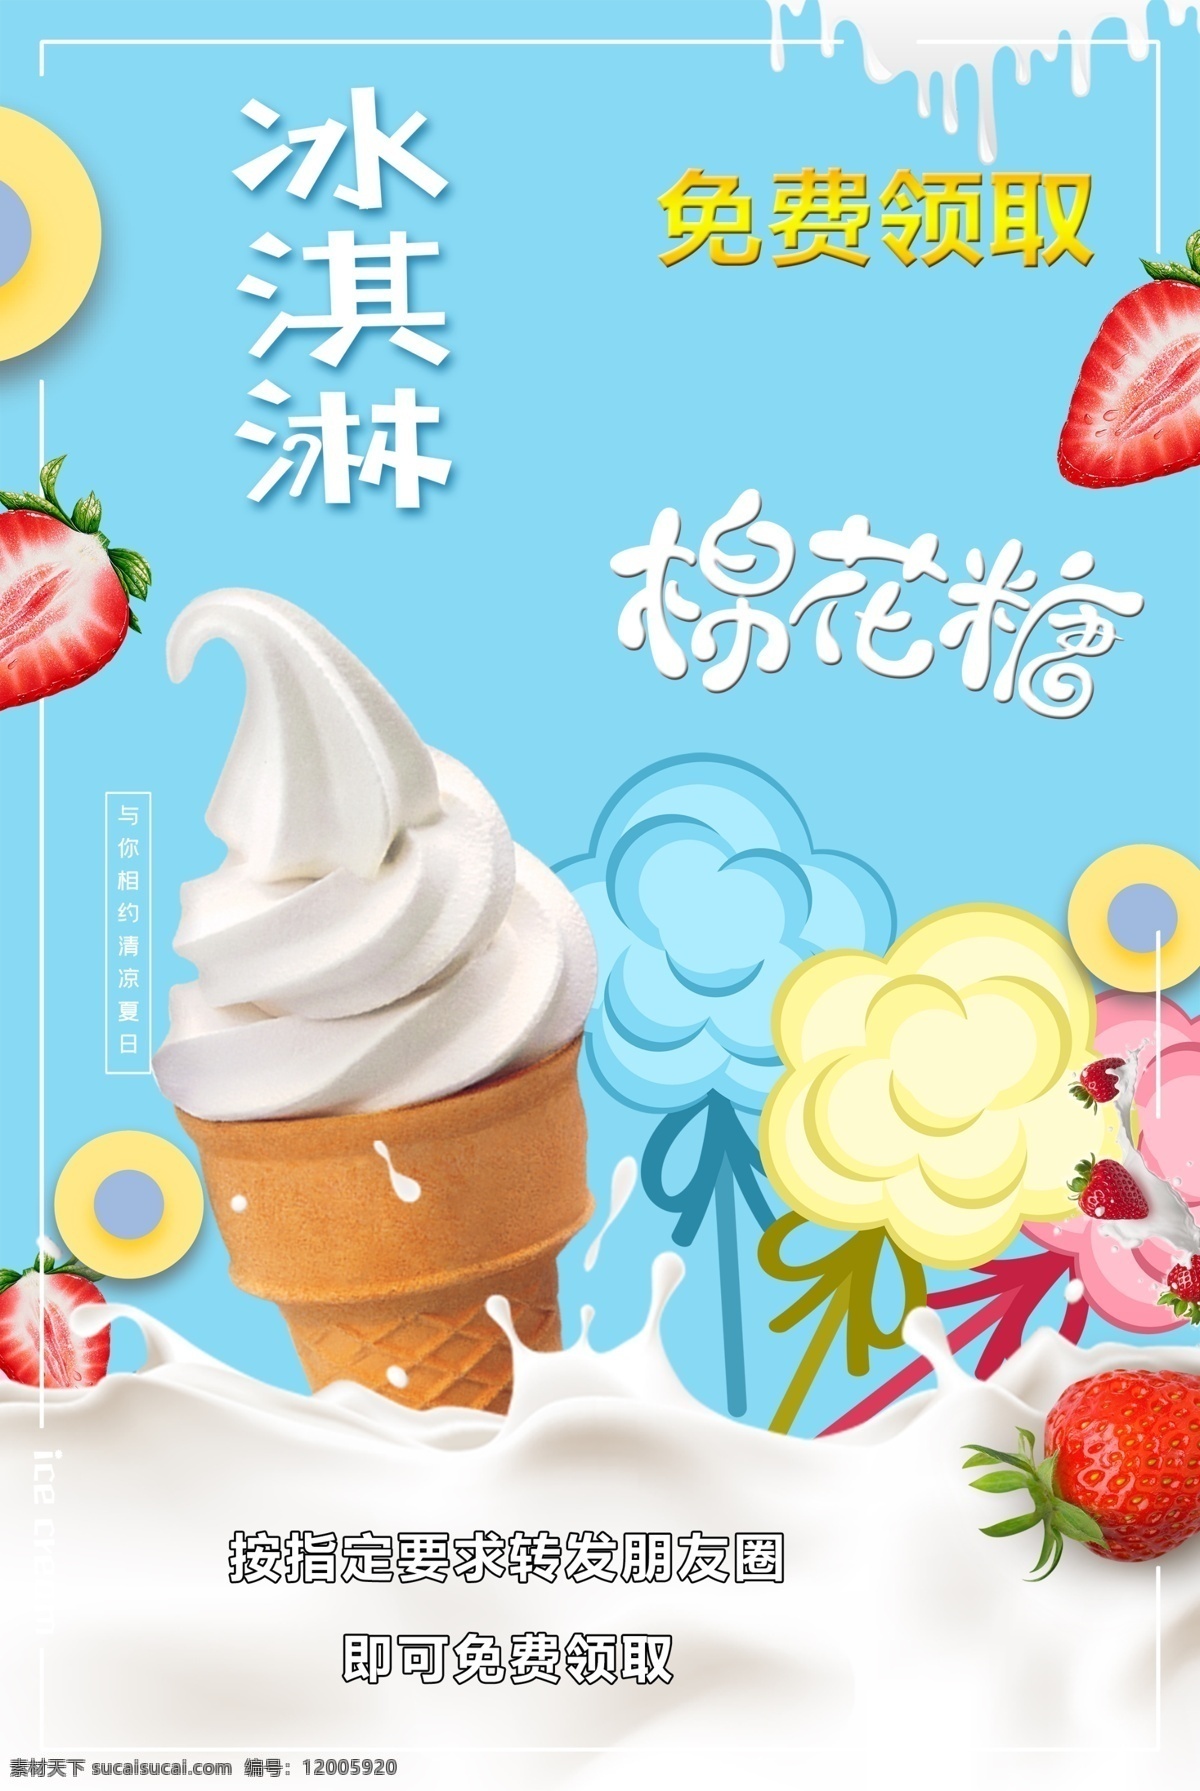 冰淇淋棉花糖 冰淇淋 棉花糖 宣传品 夏天 免费领取